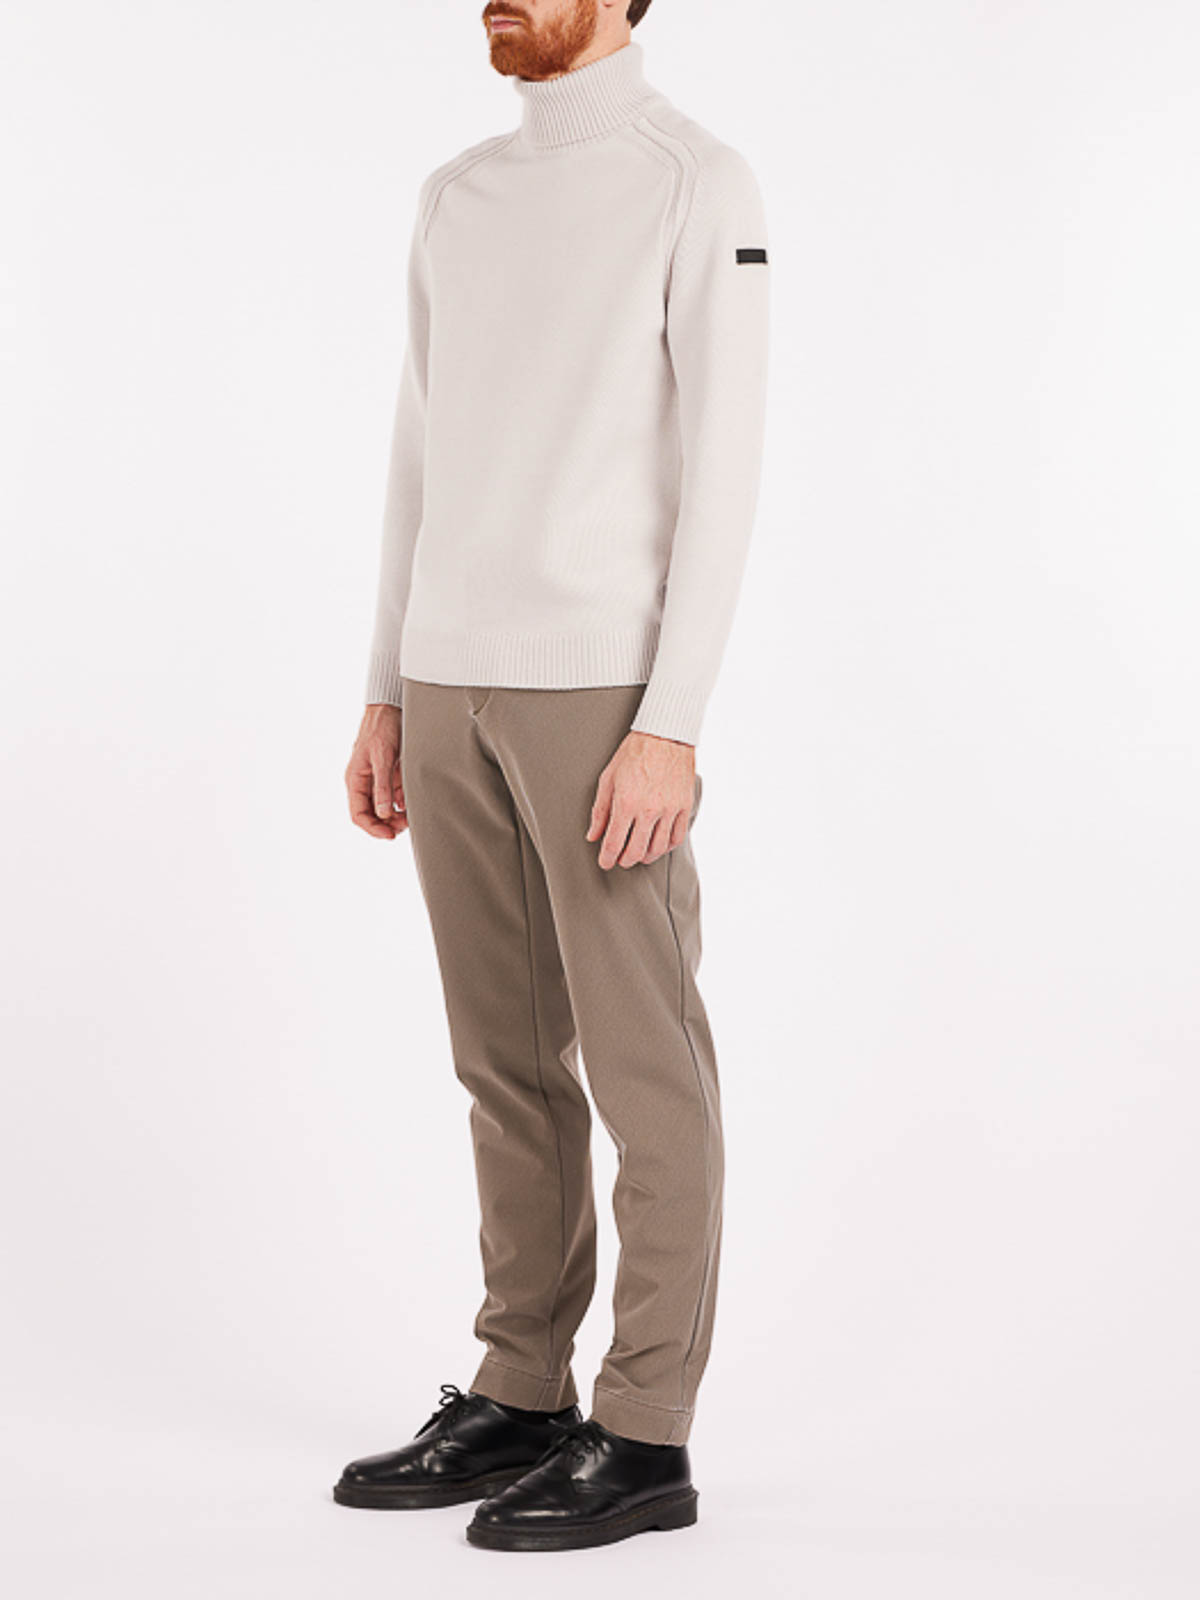 Shop Rrd Roberto Ricci Designs Turtleneck Sweater In White